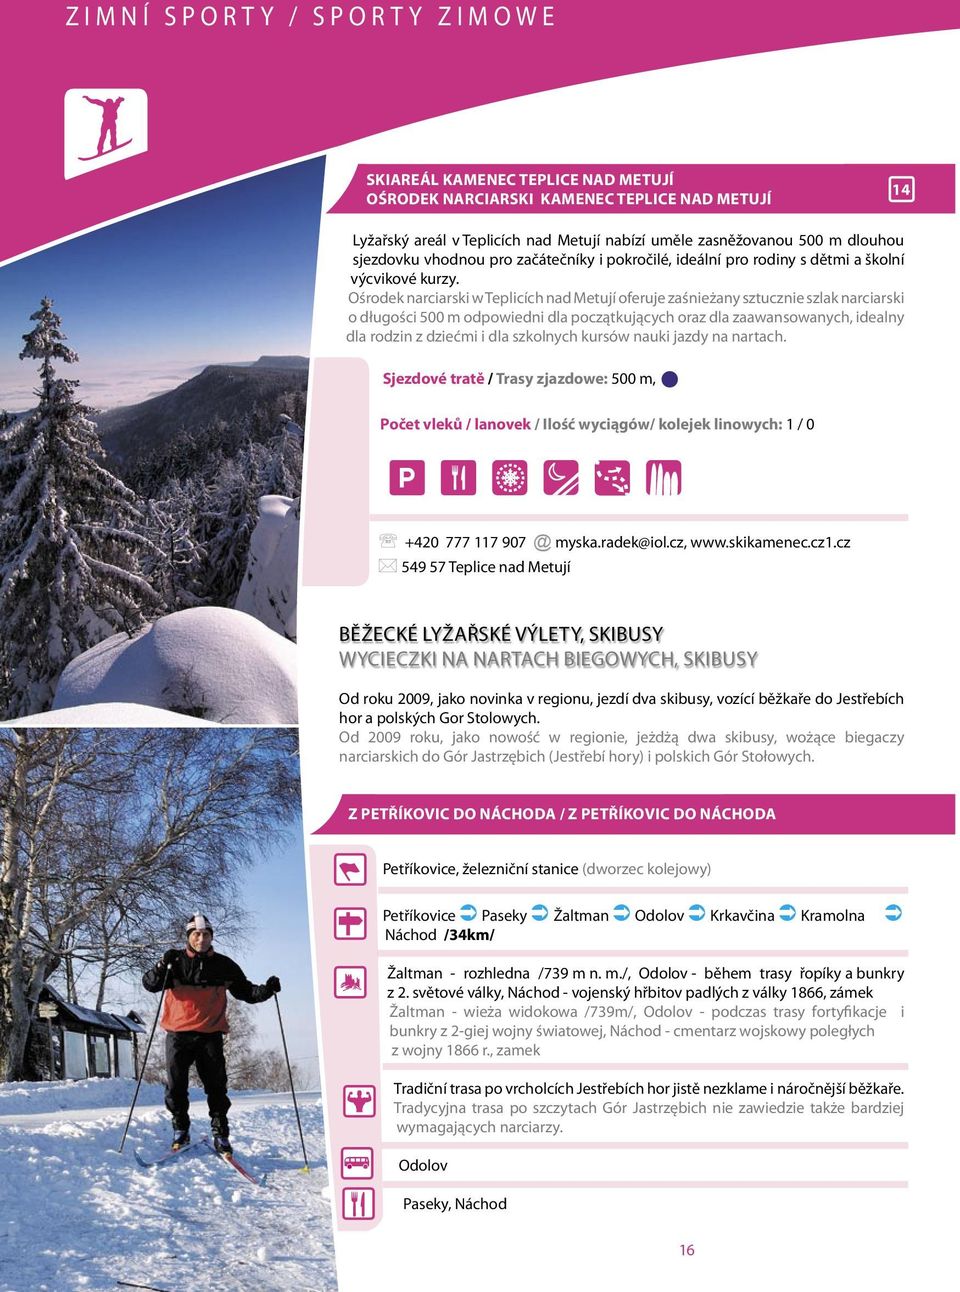 Ośrodek narciarski w Teplicích nad Metují oferuje zaśnieżany sztucznie szlak narciarski o długości 500 m odpowiedni dla początkujących oraz dla zaawansowanych, idealny dla rodzin z dziećmi i dla